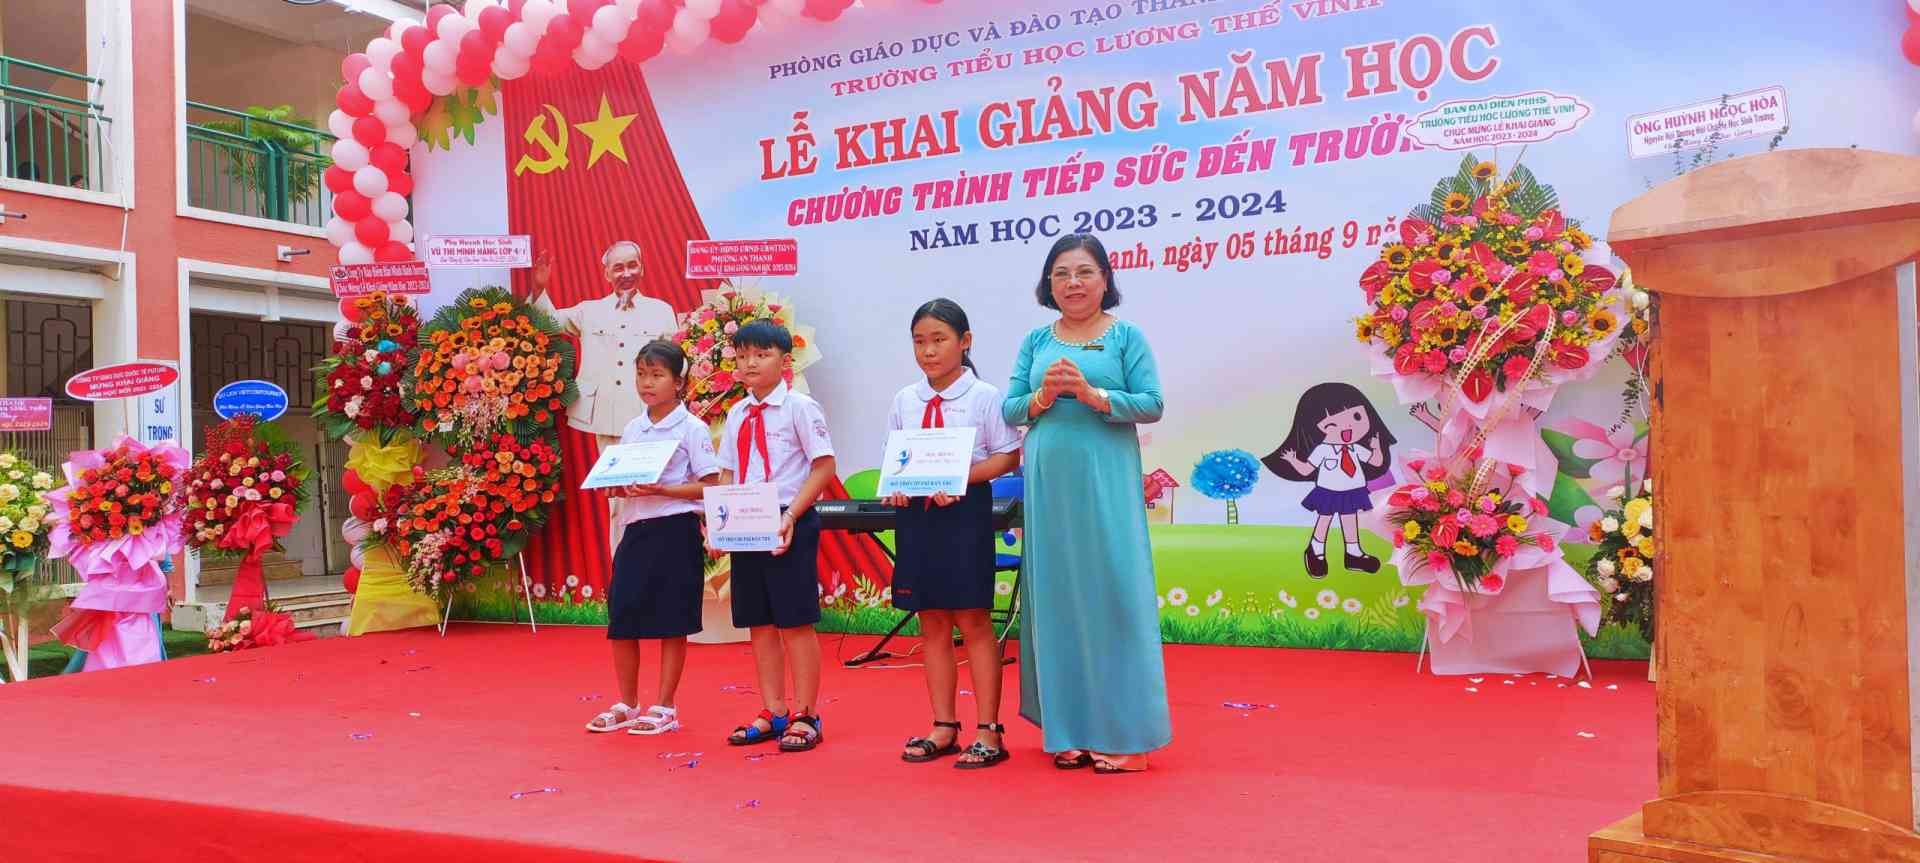 Cô Hồ Thị Diệp Phượng  - Hiệu Trưởng nhà trường trao học bổng Tiếp sức đến trường cho các em học sinh